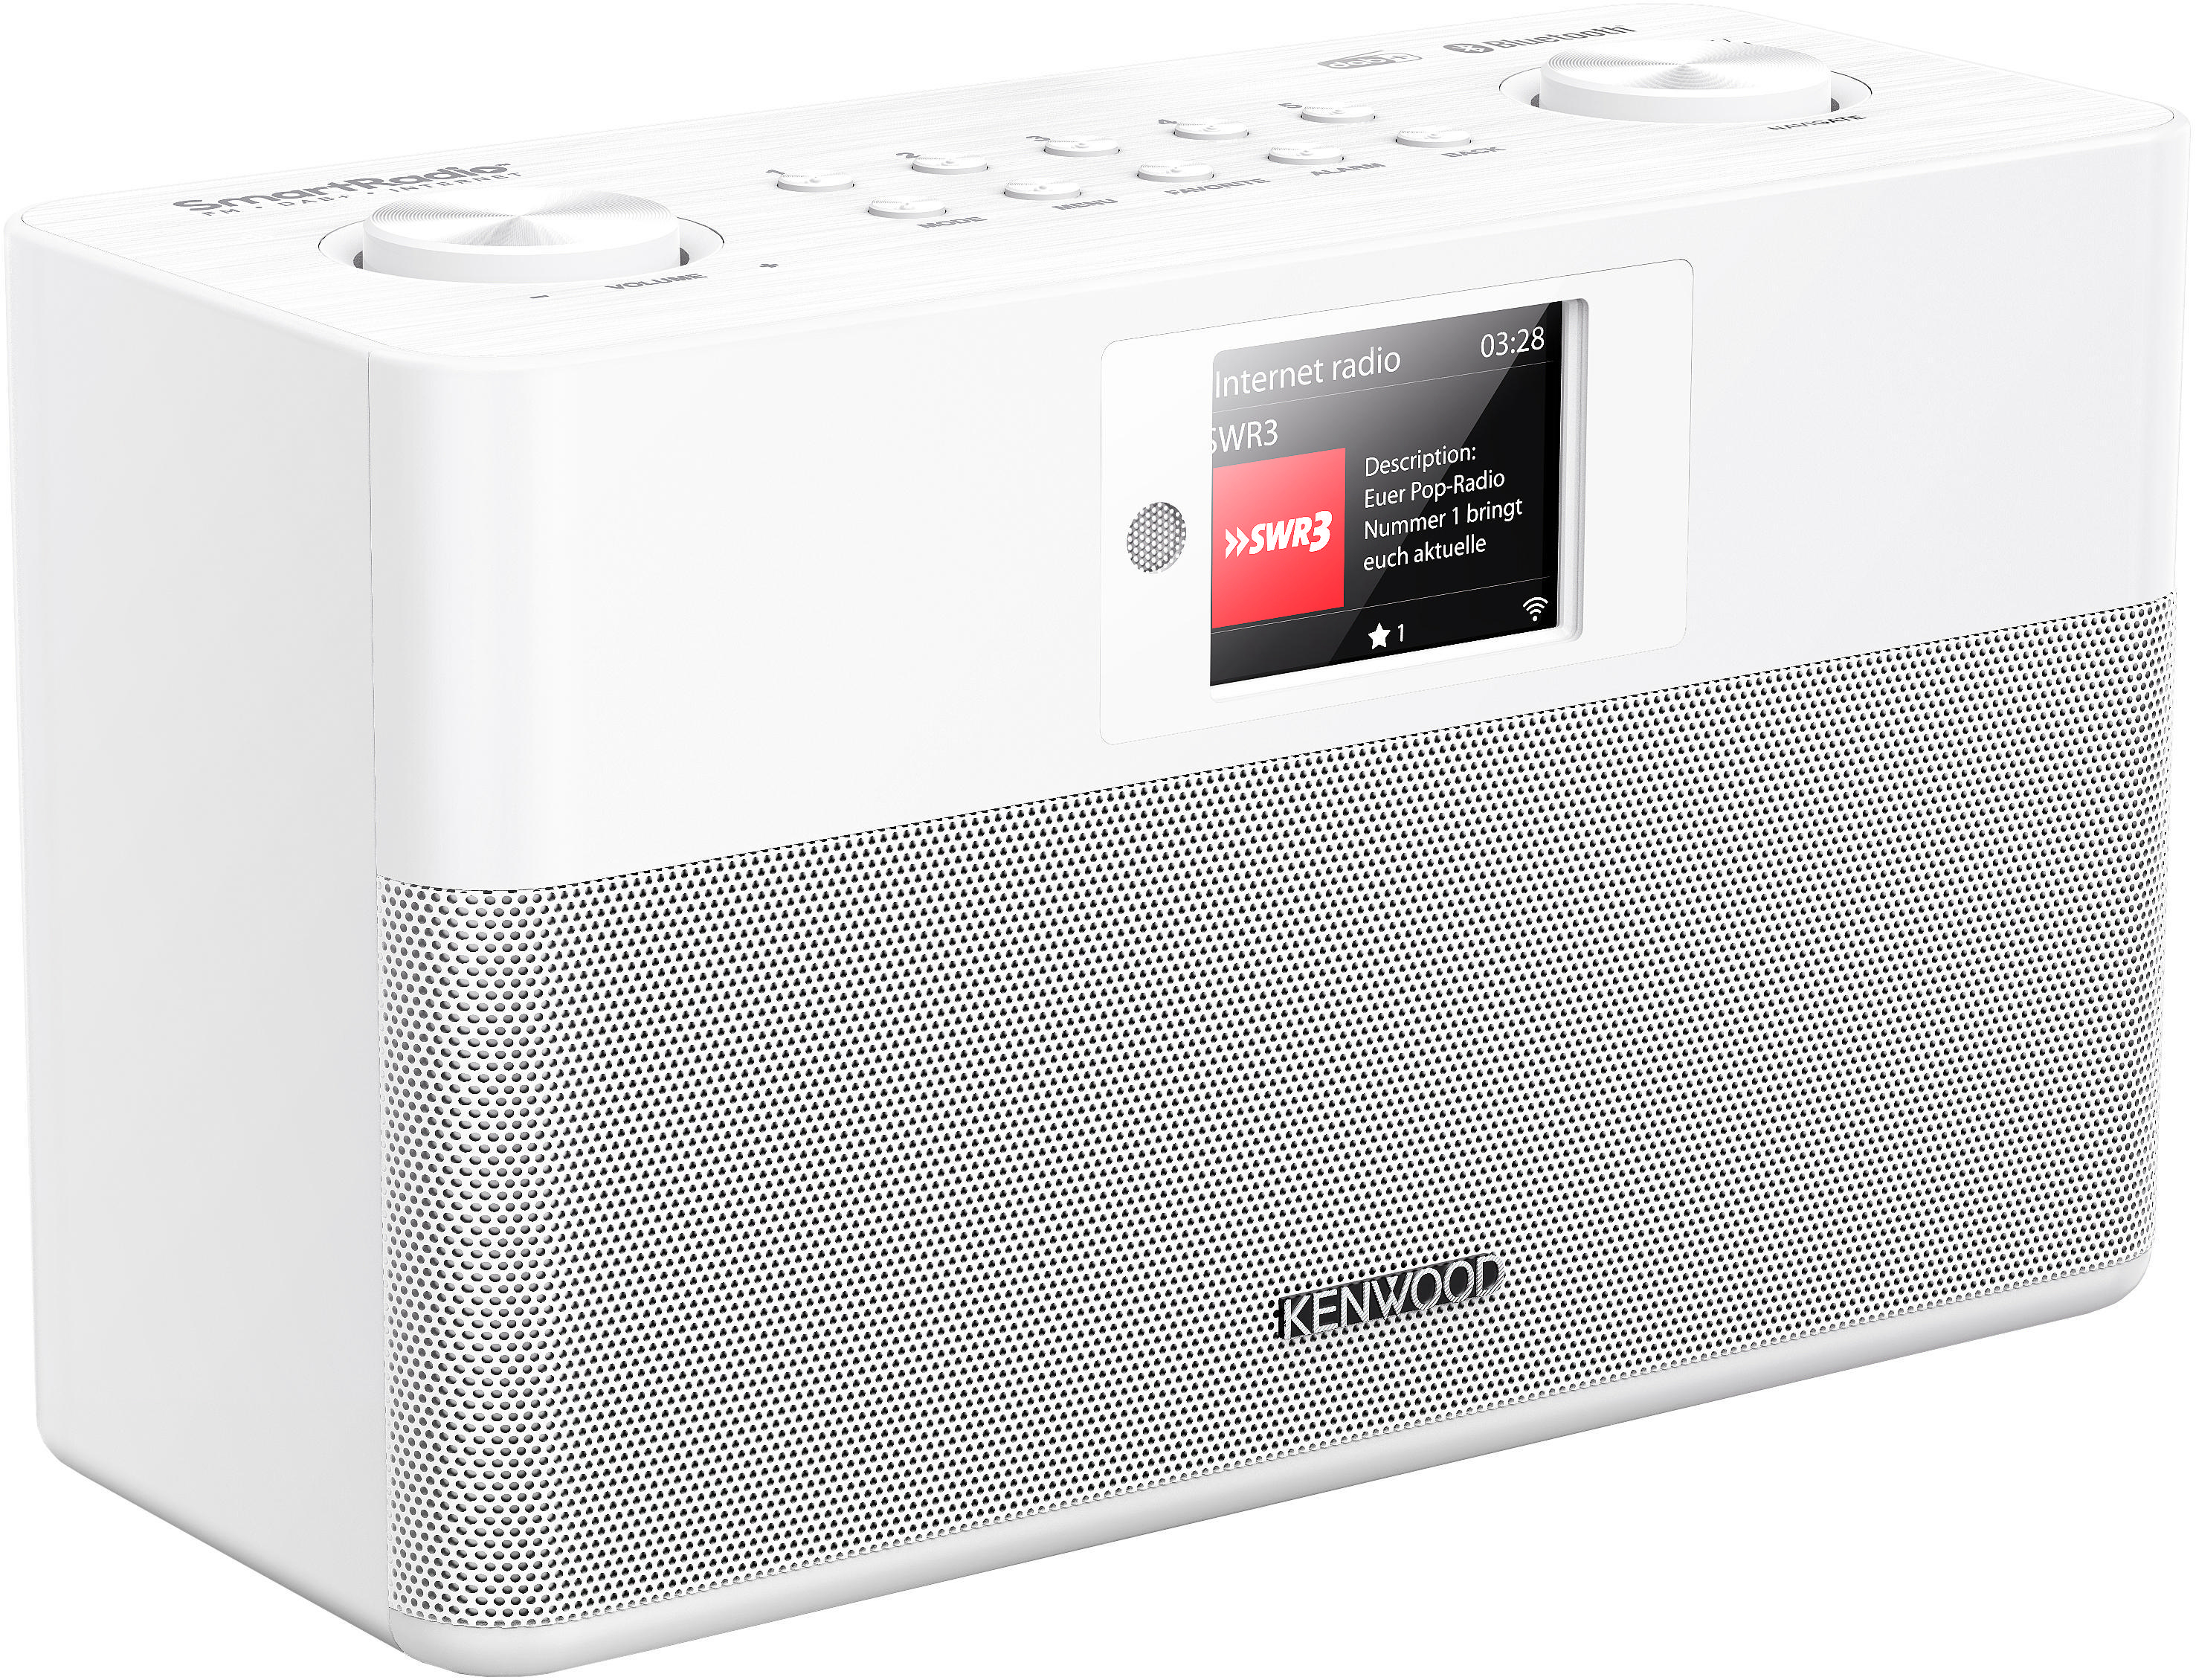 KENWOOD CR-ST100S-W Internetradio, DAB+, FM, Bluetooth, Weiß Radio, Internet